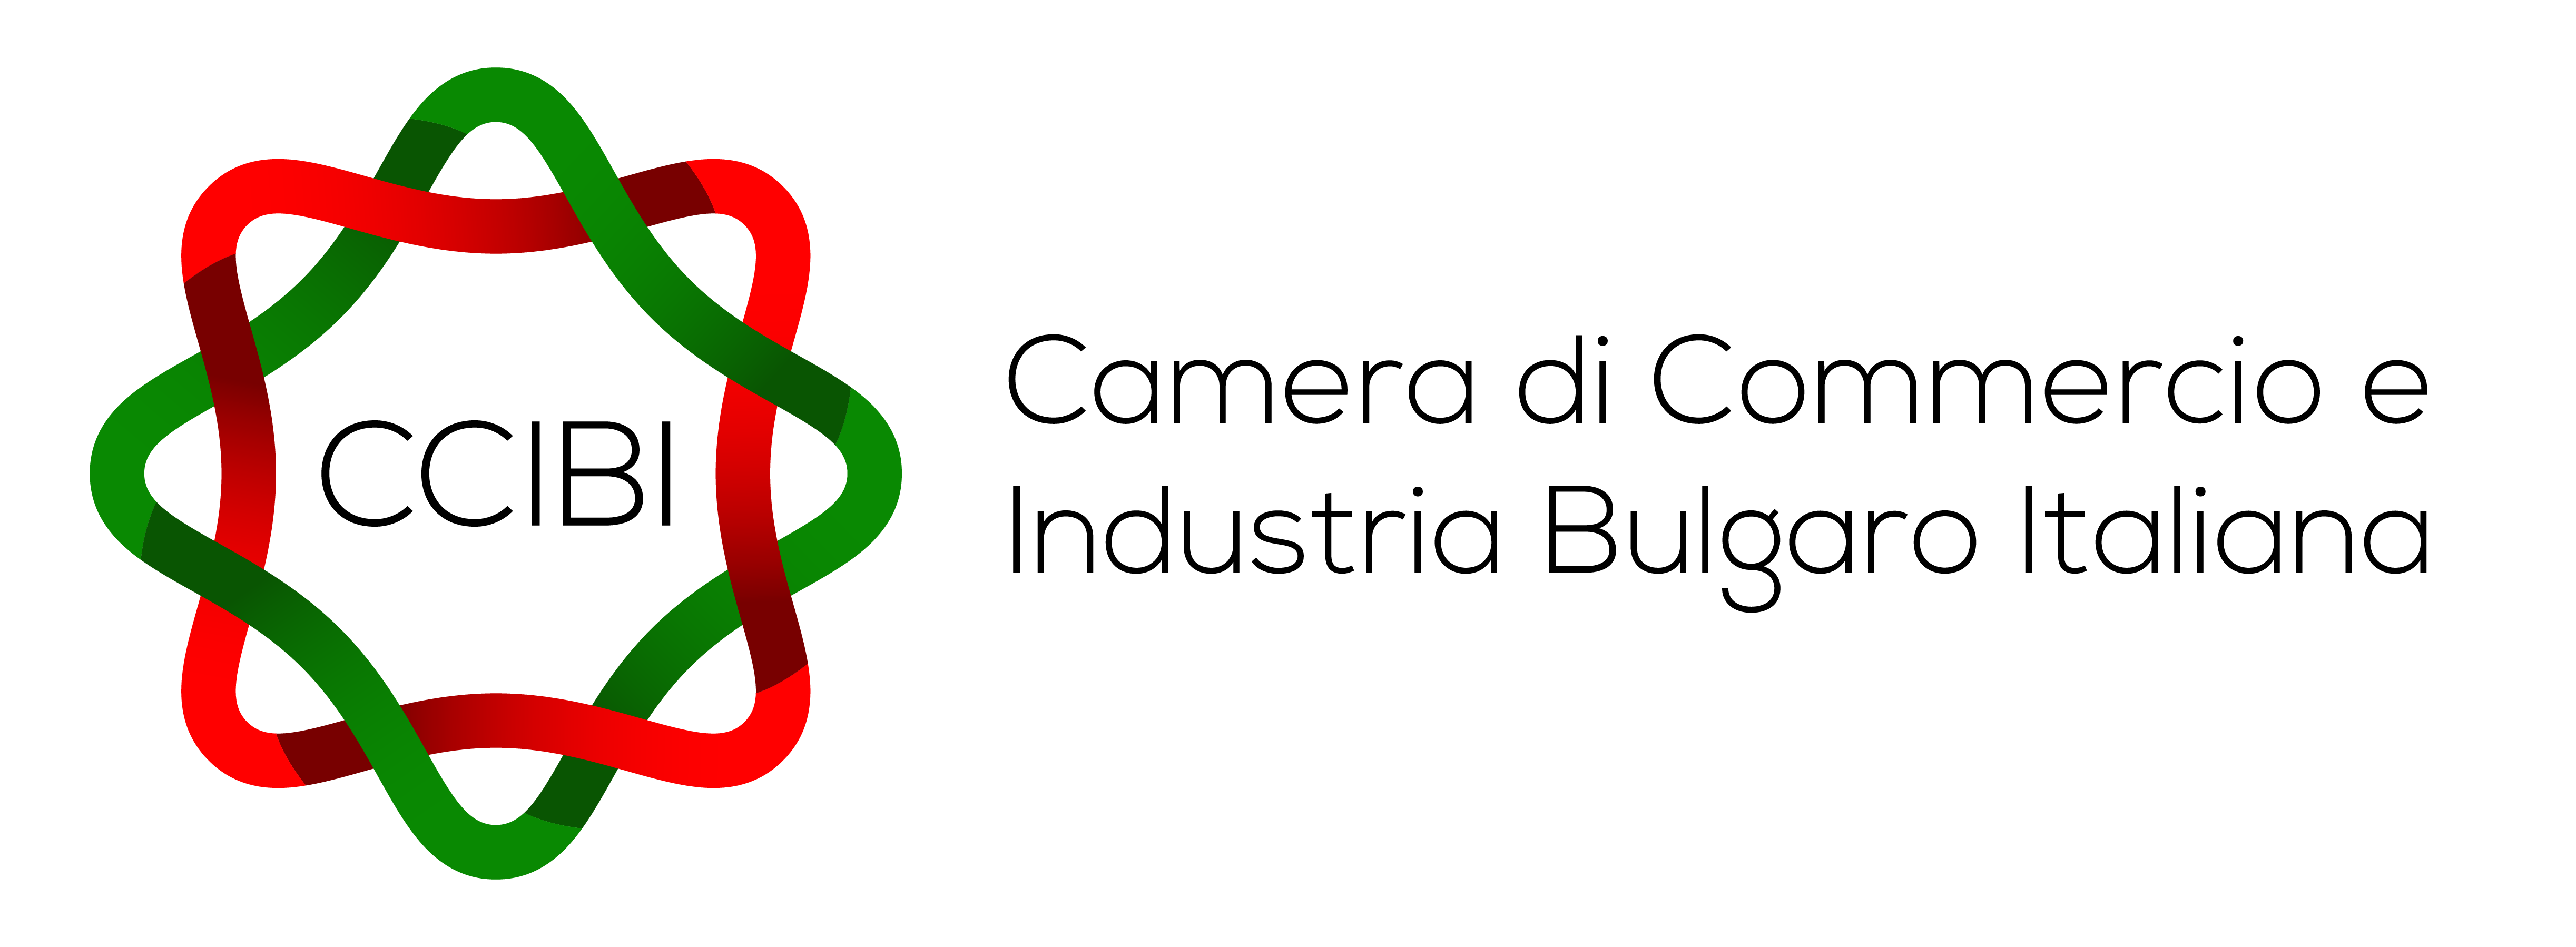 Camera di Commercio e Industria Bulgaro Italiana